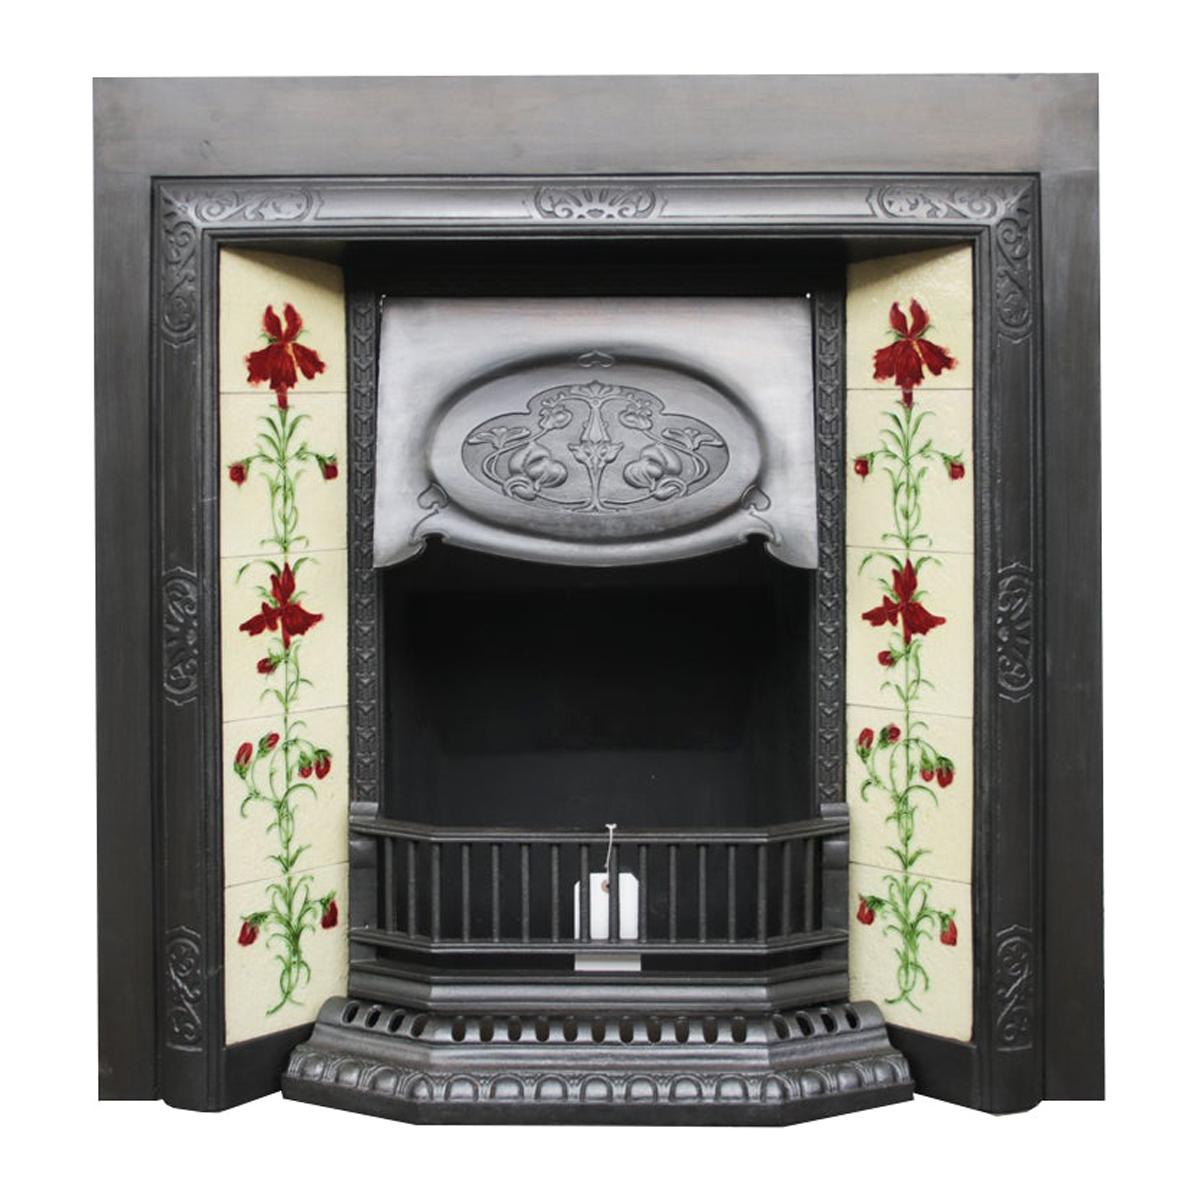 Antique Edwardian Art Nouveau Cast Iron Fireplace Insert